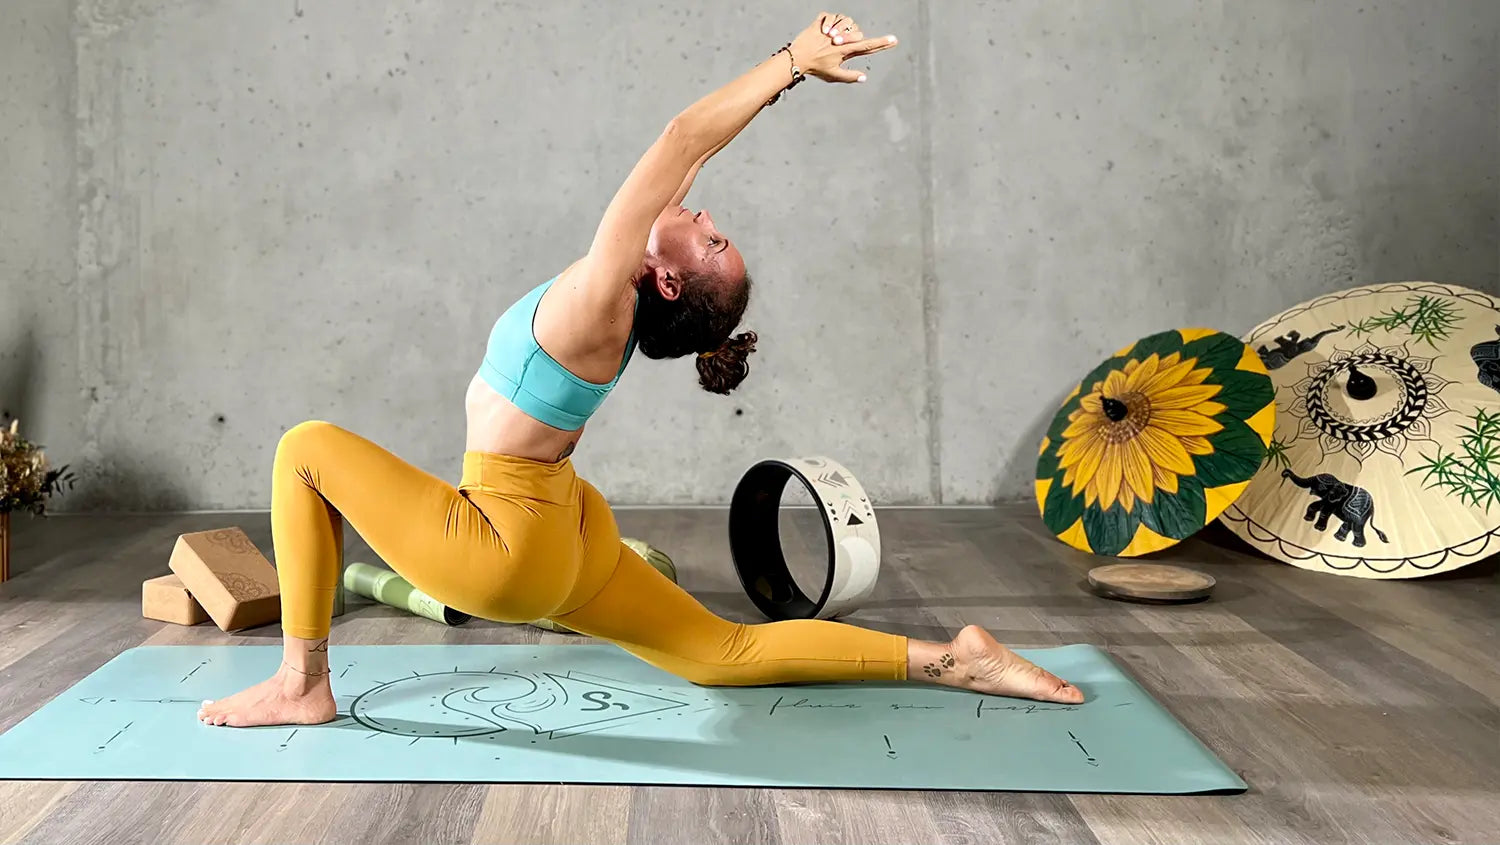 Los 10 tipos de yoga que más se practican y cuál es el ideal según